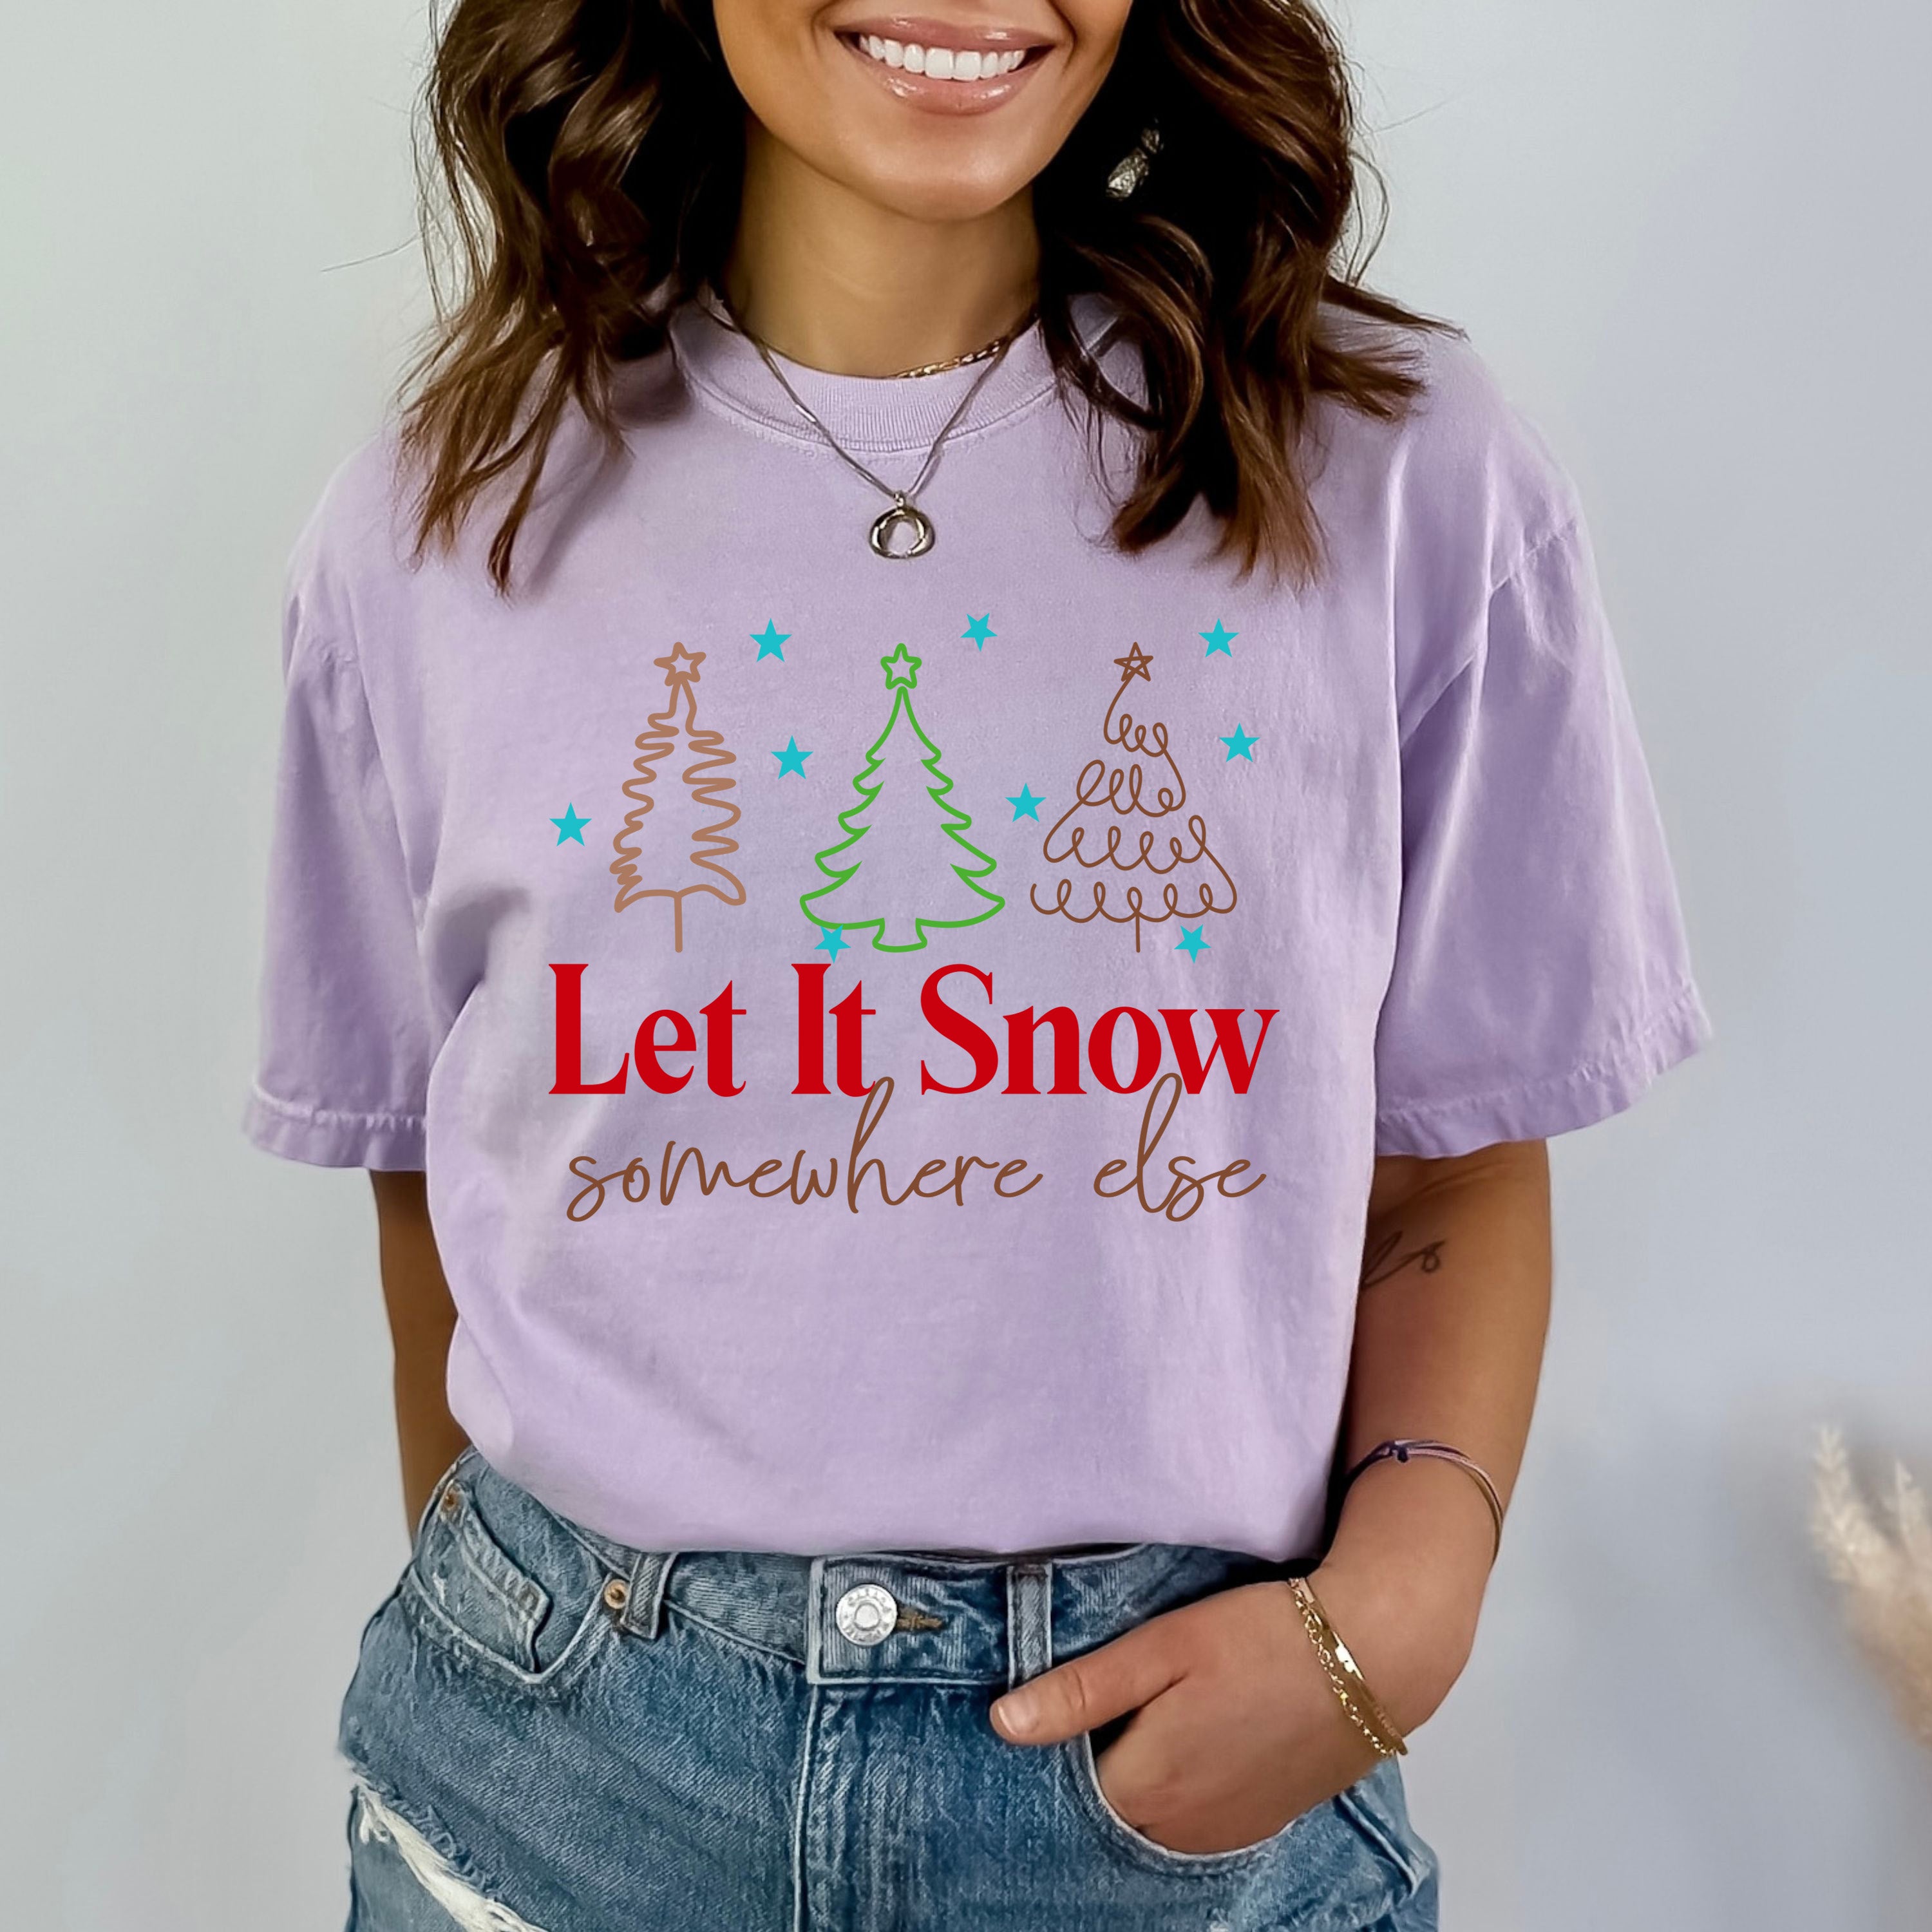 Let It Snow Somewhere Else - Bella Canvas